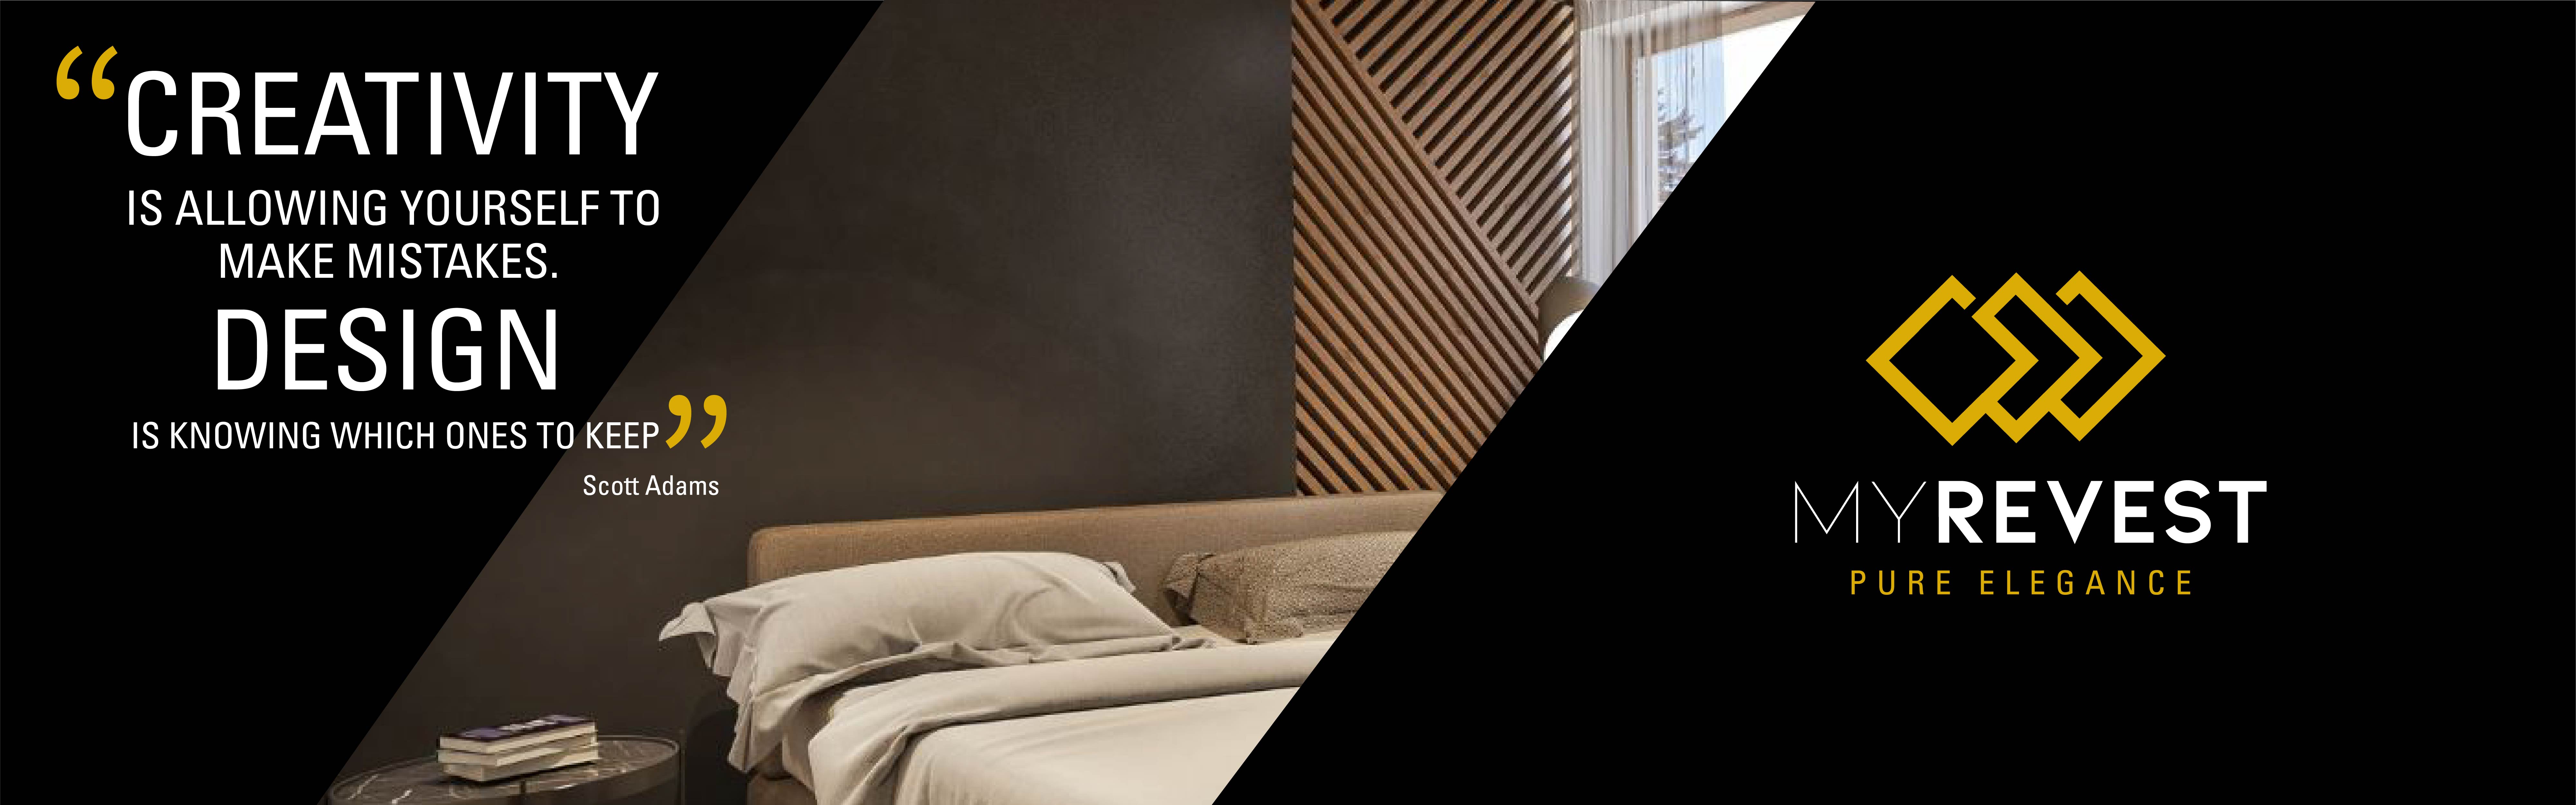 Microsementbelegg på veggen i et minimalistisk soverom ved siden av MyRevest-logoen